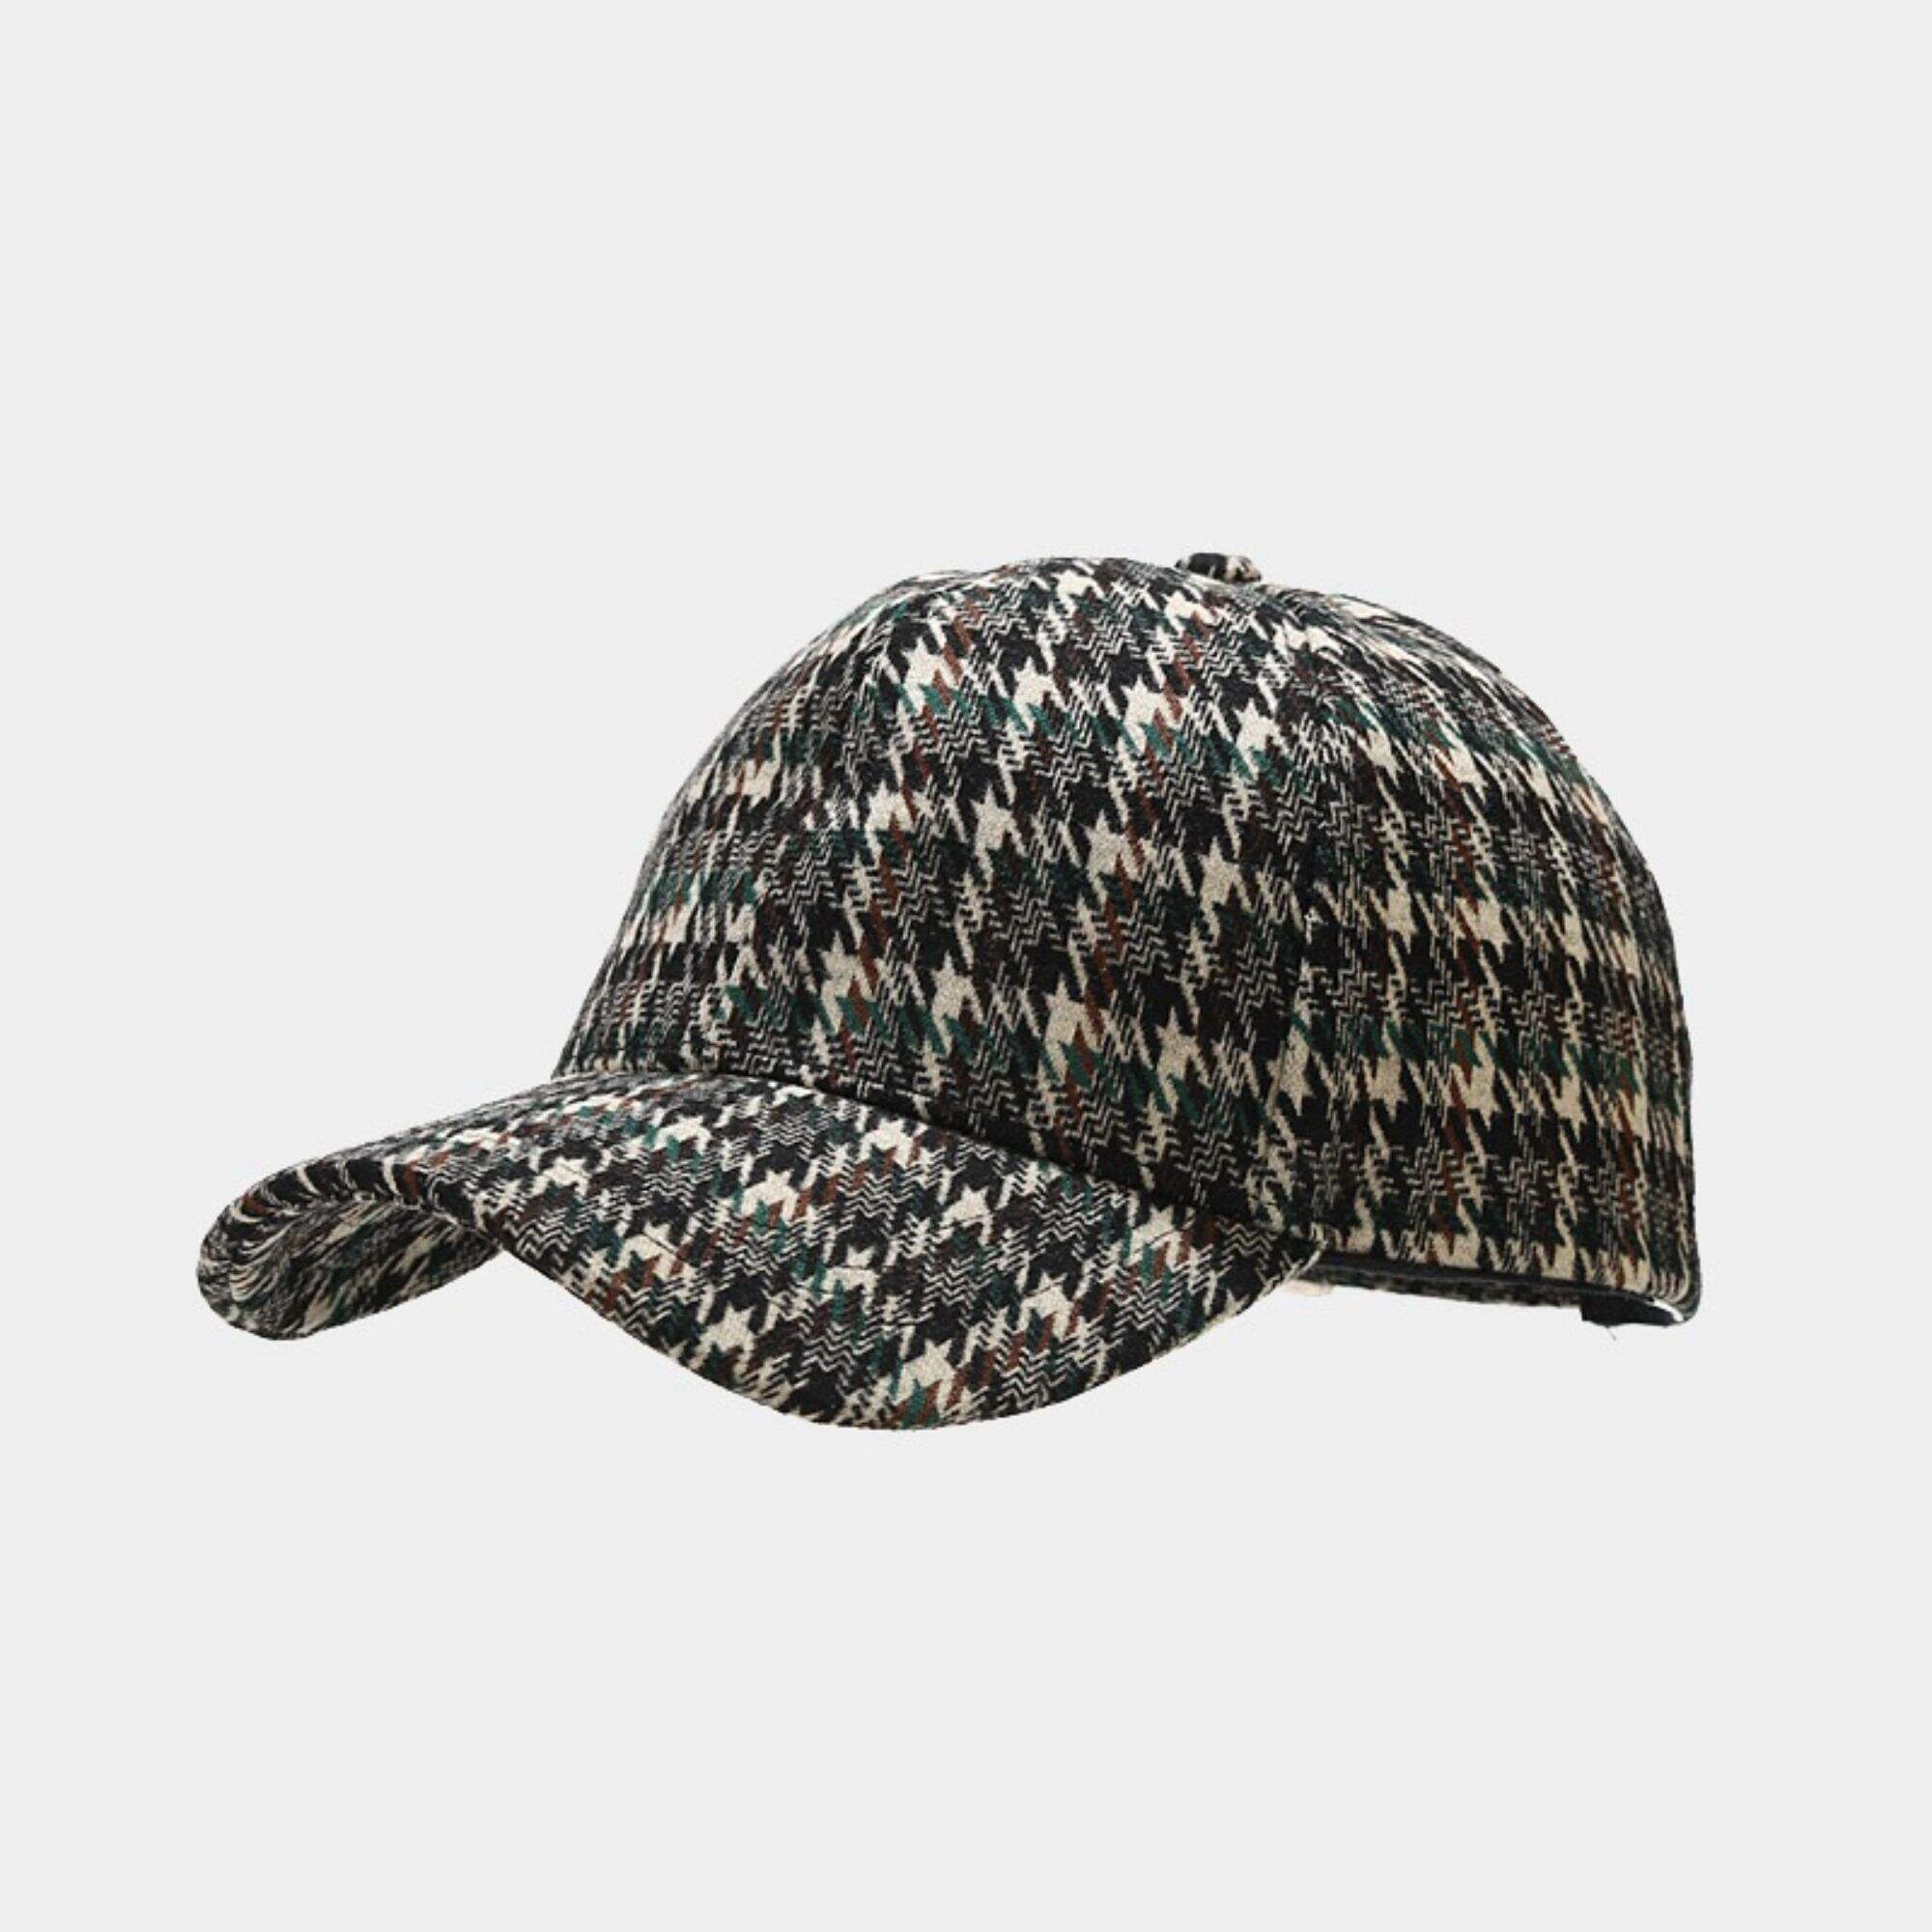 Vintage bird-checked baseball cap